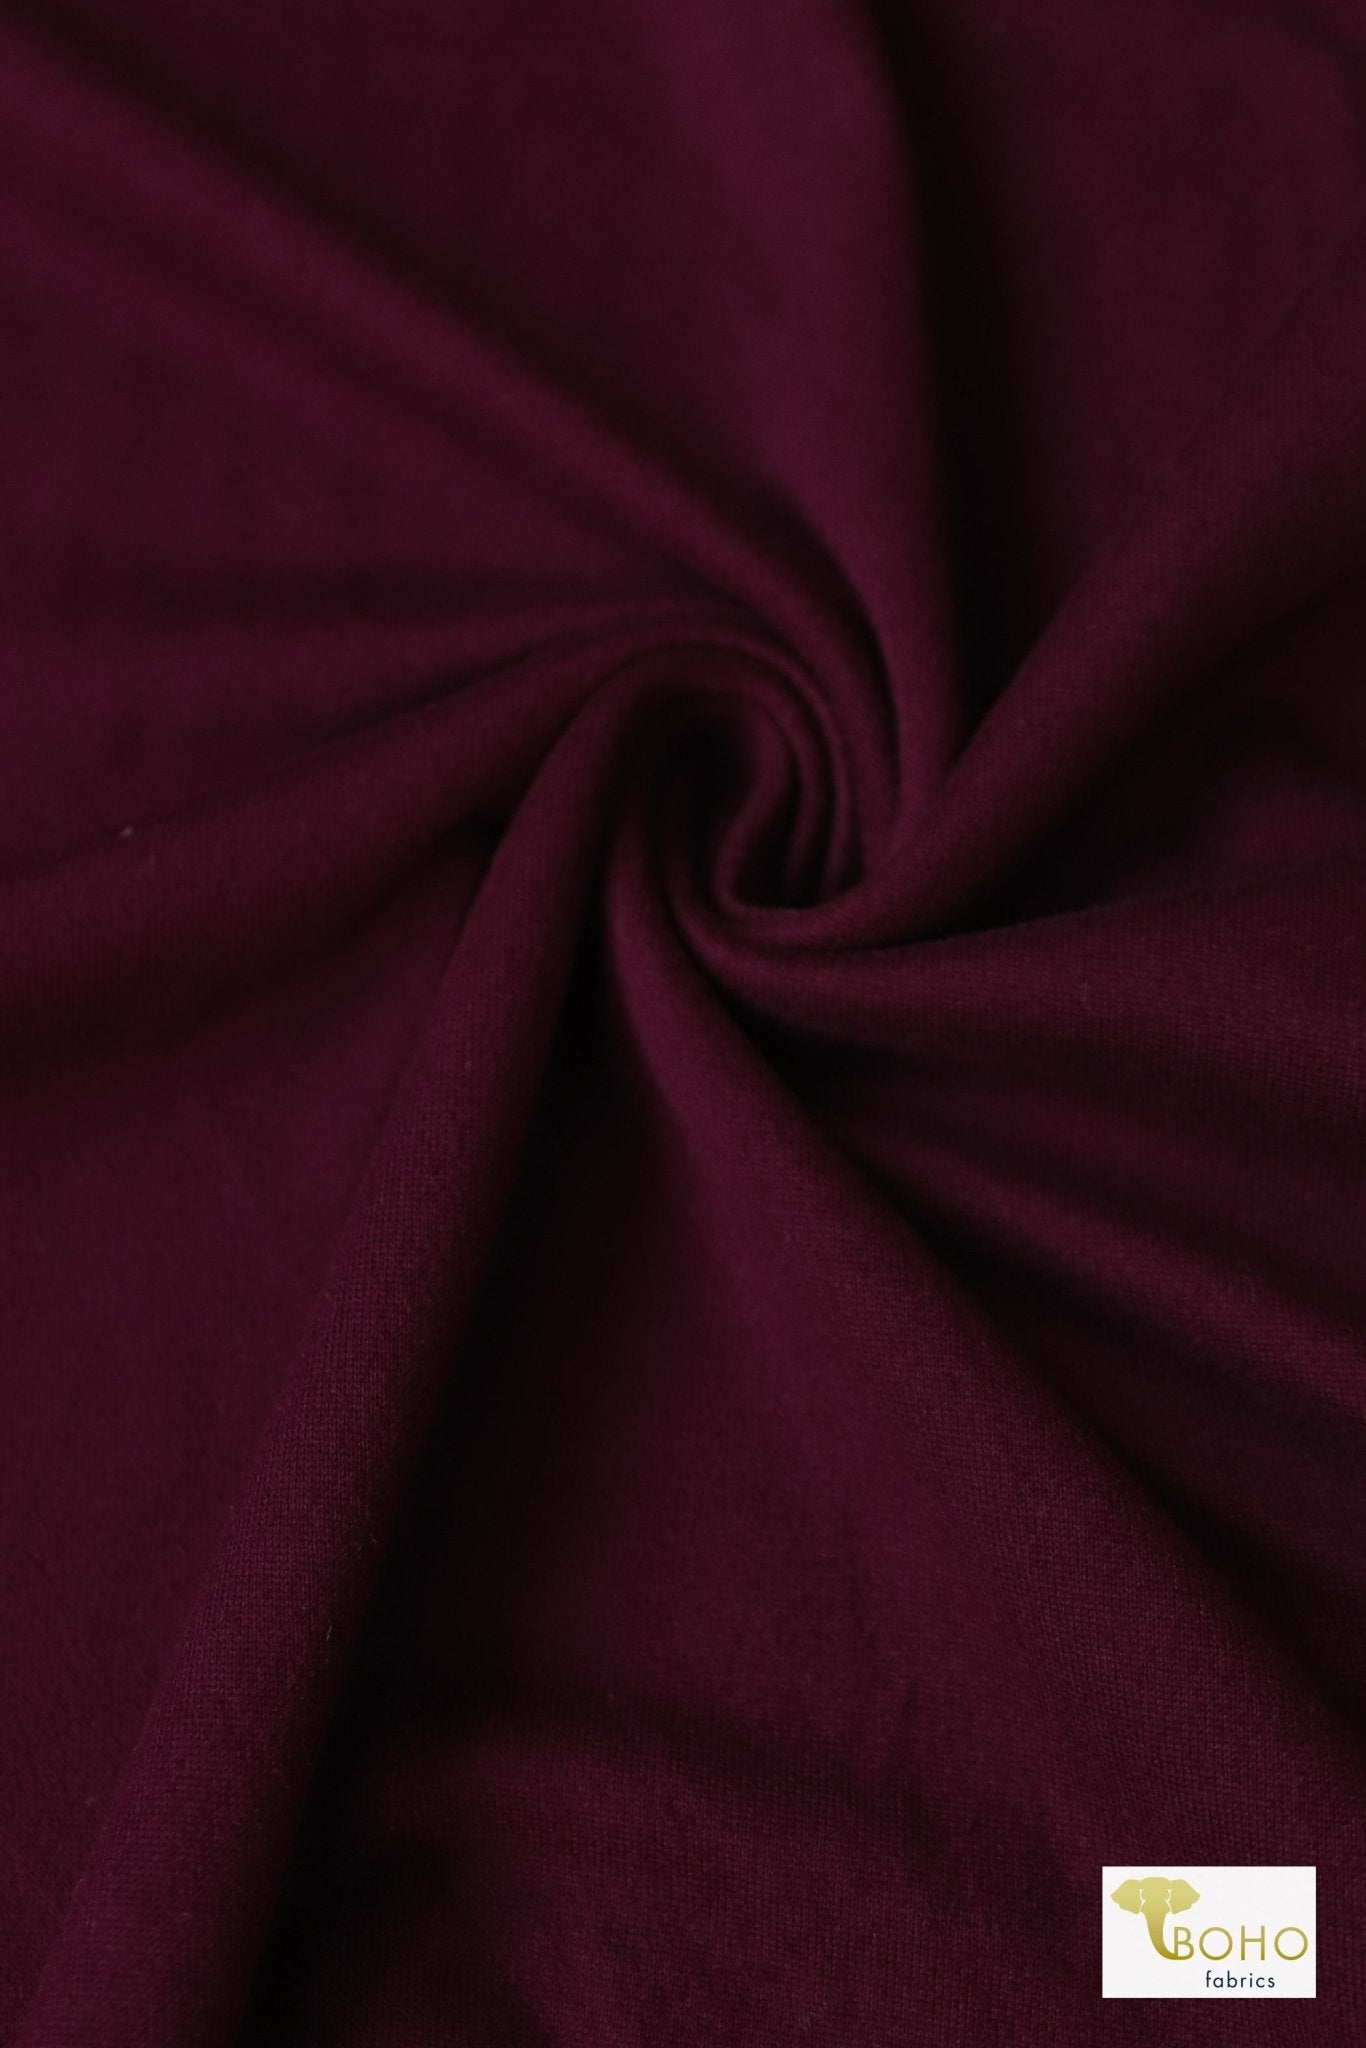 Radiant Burgundy, Bolero Brushed Poly Knit - Boho Fabrics